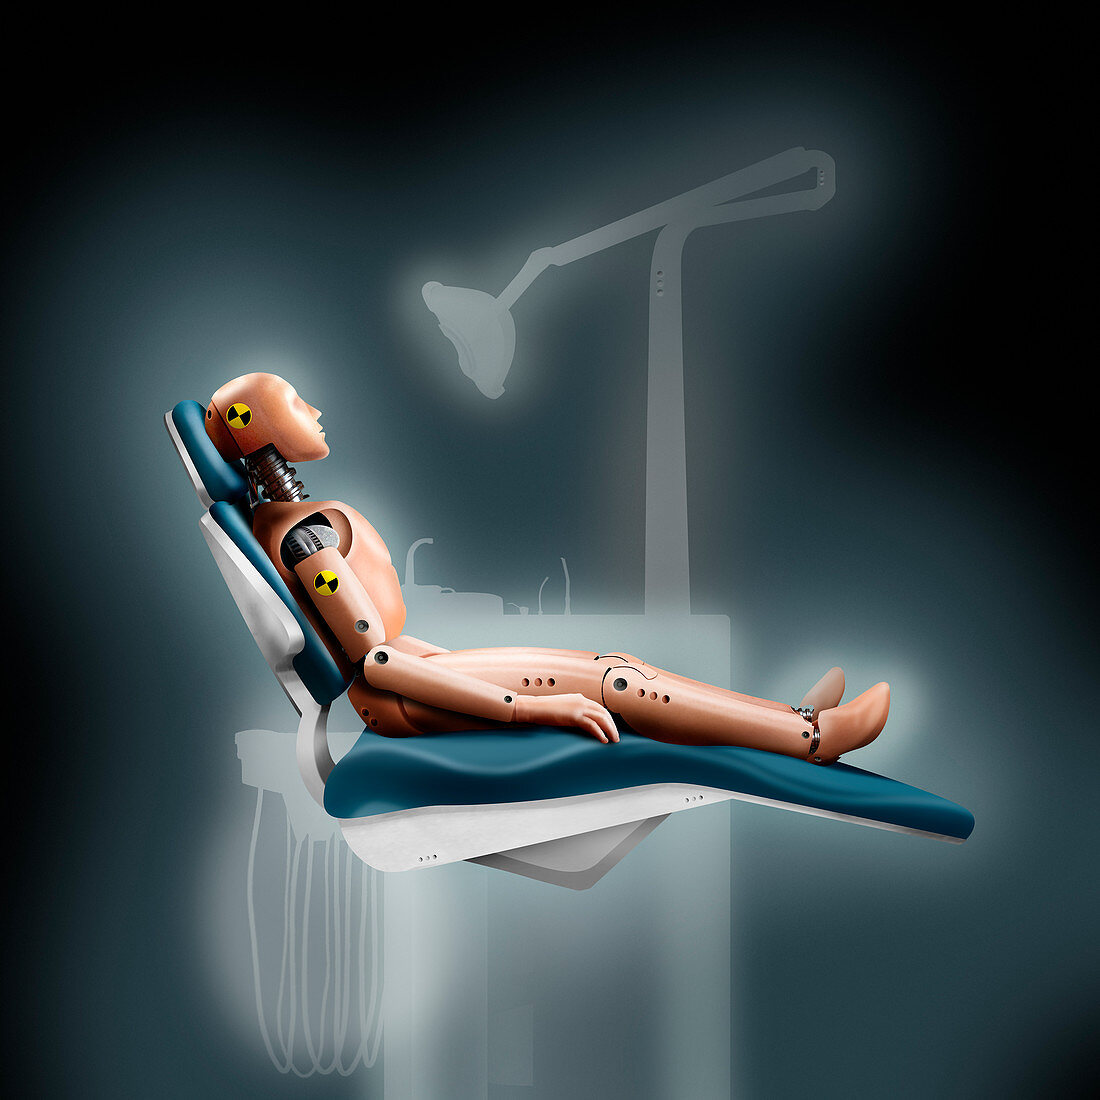 Crash test dummy in dentist's chair, illustration